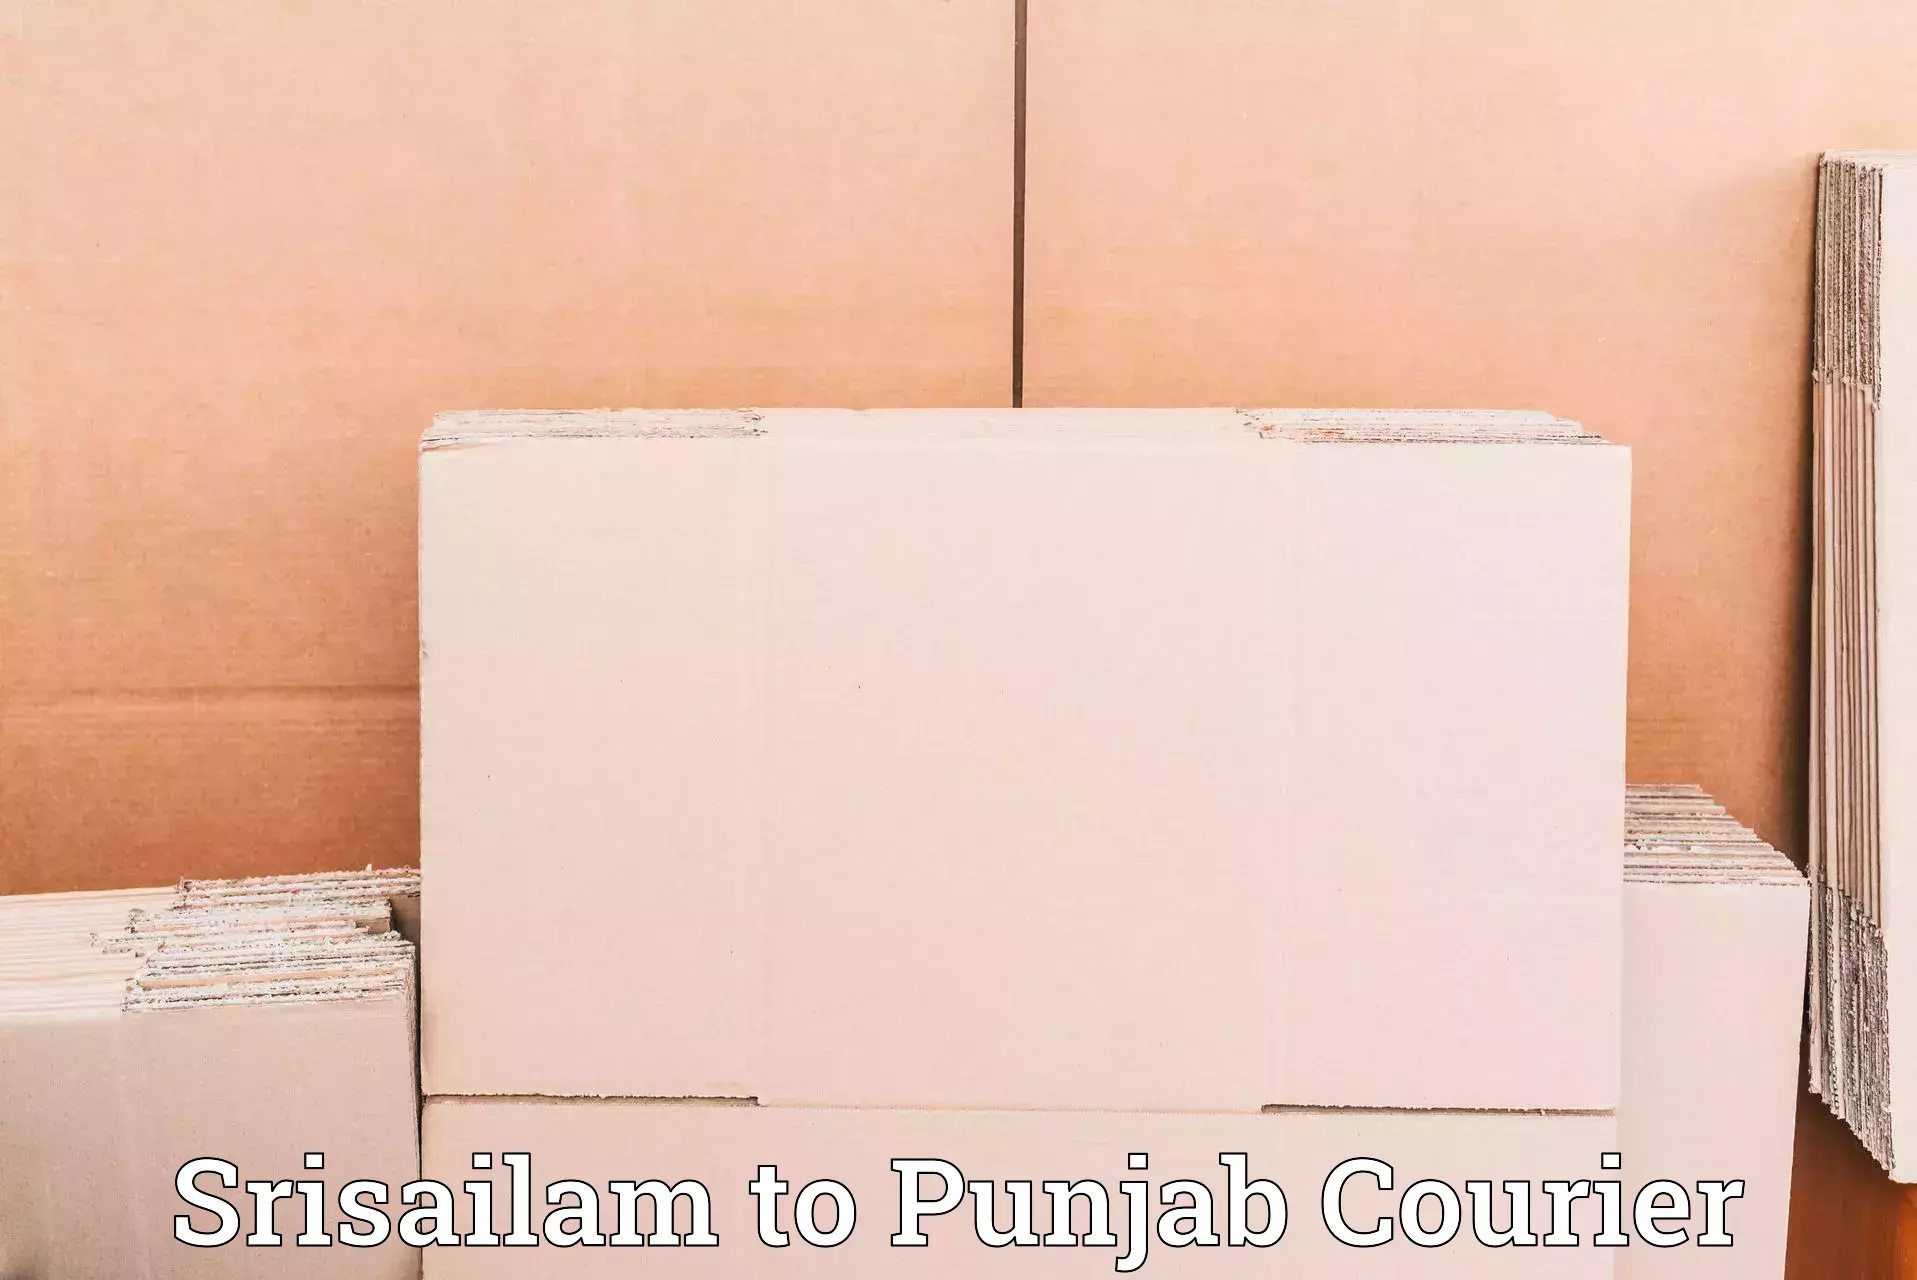 Express shipping Srisailam to Central University of Punjab Bathinda